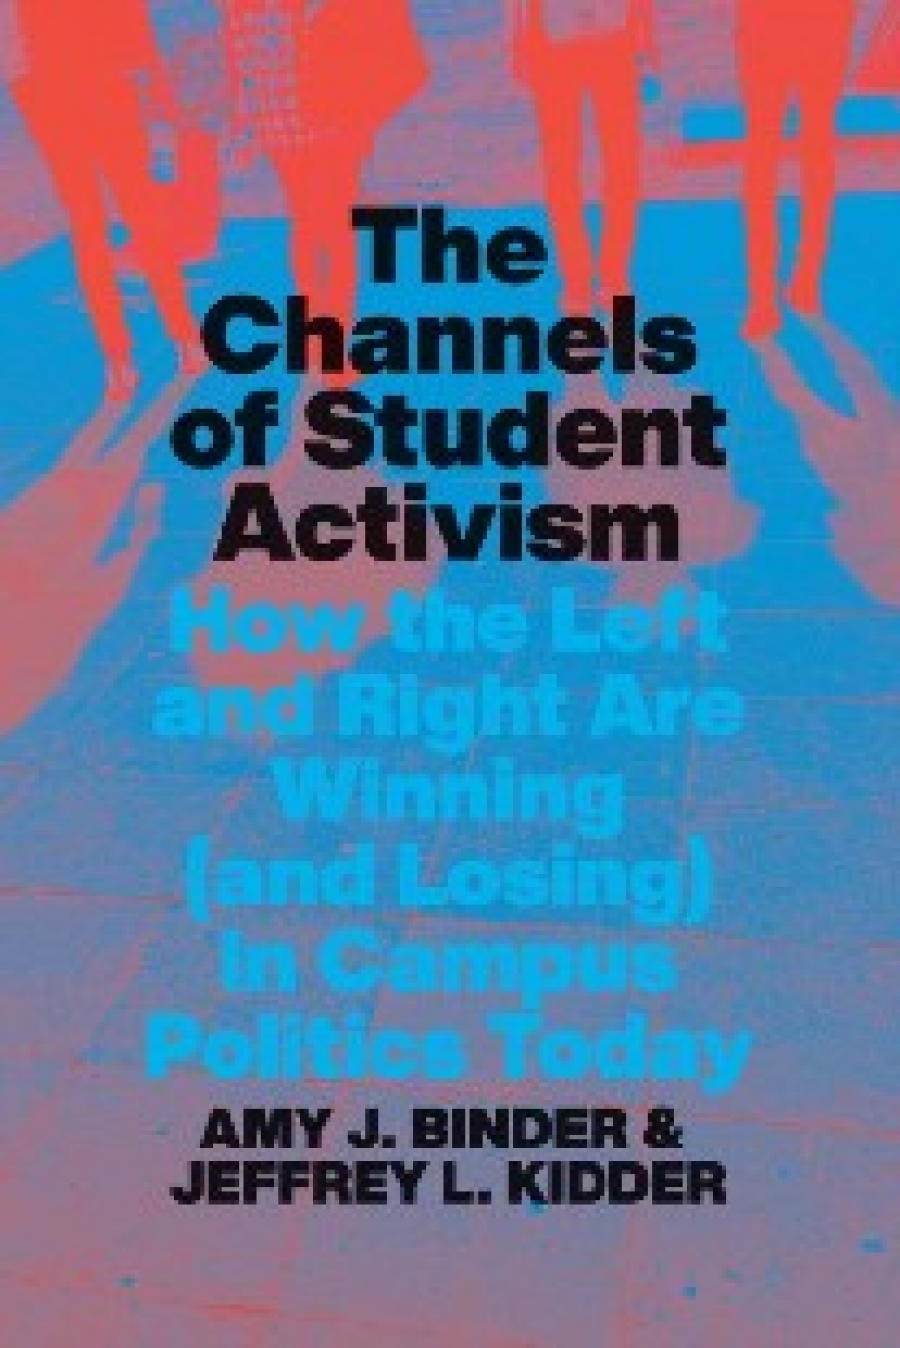 Binder, Amy J. Kidder, Jeffrey L. Channels of student activism 